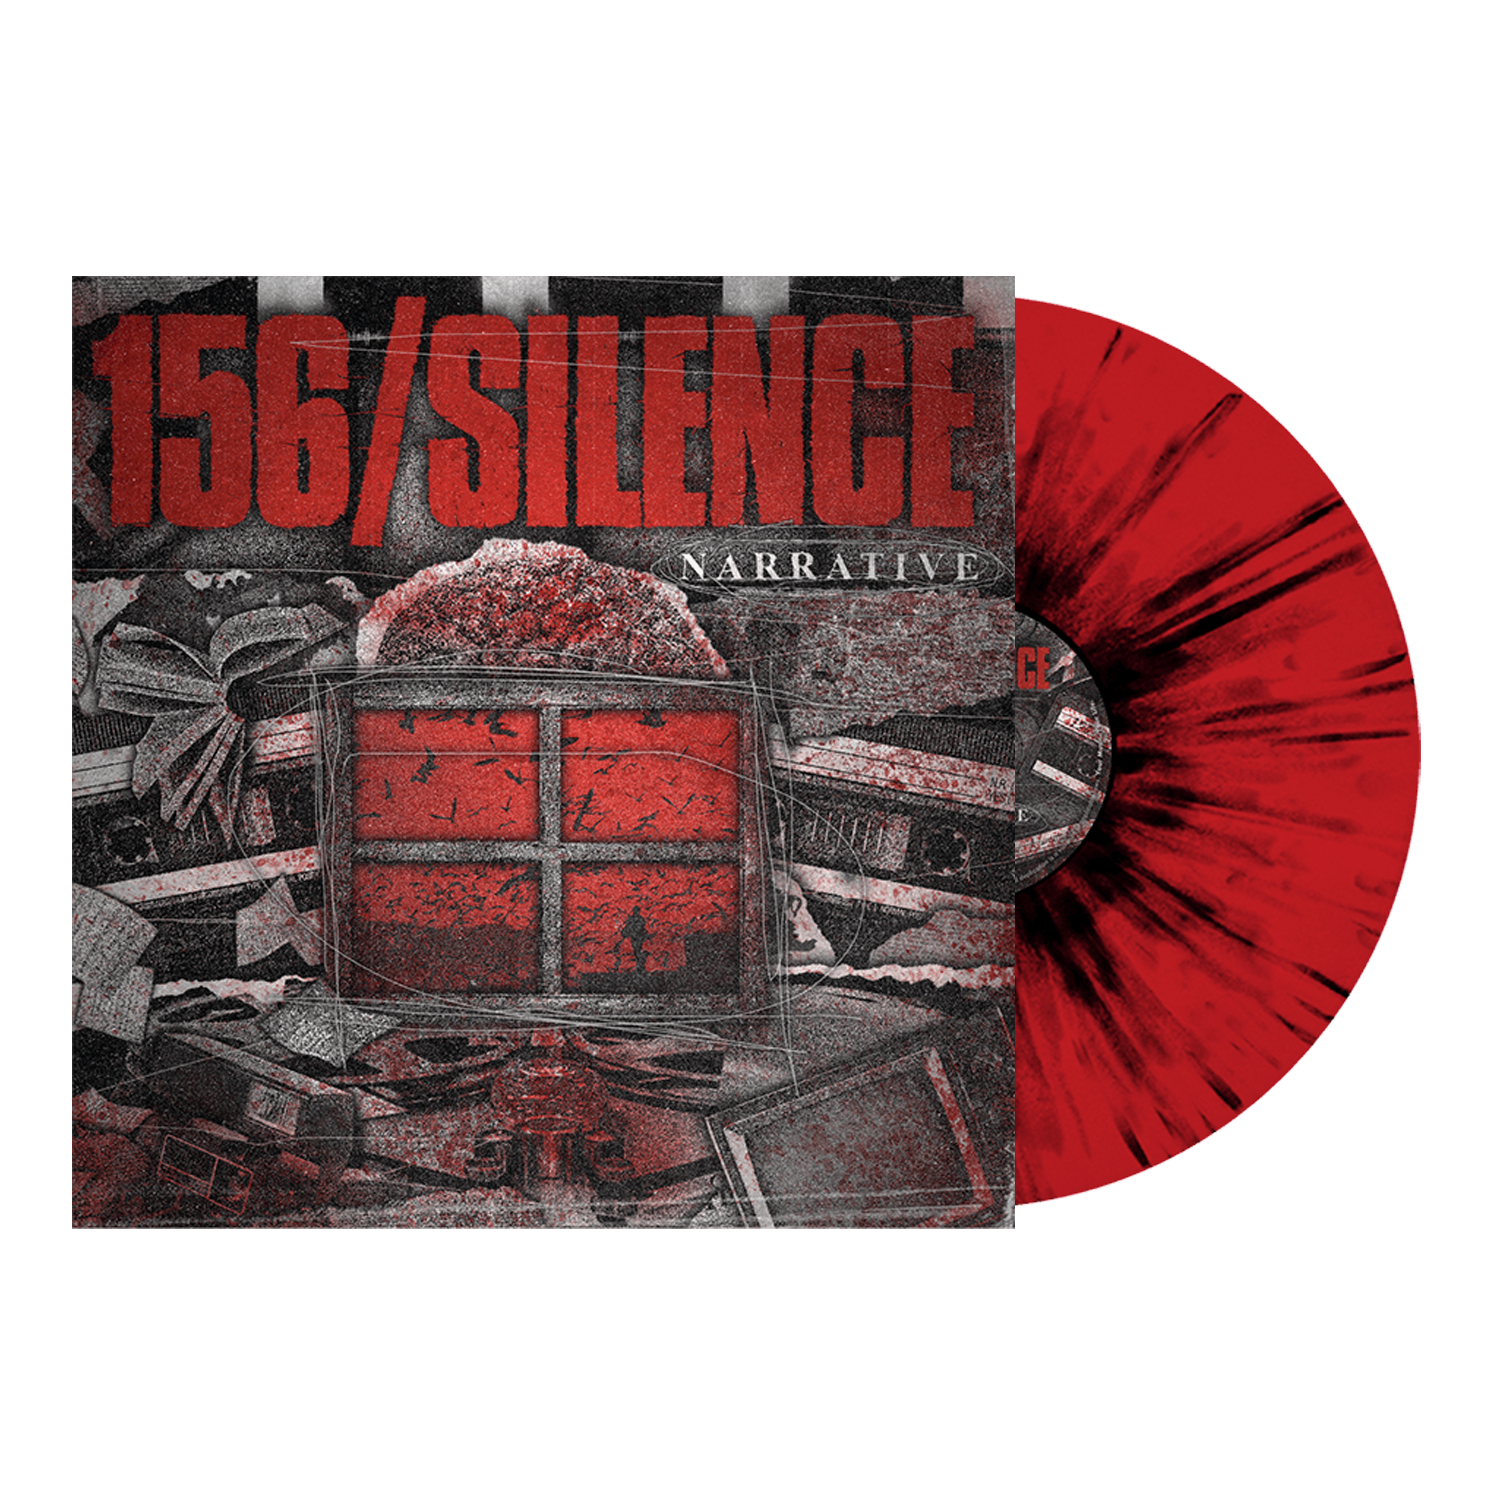 156/Silence - 'Narrative' Red w/ Black Splatter Vinyl